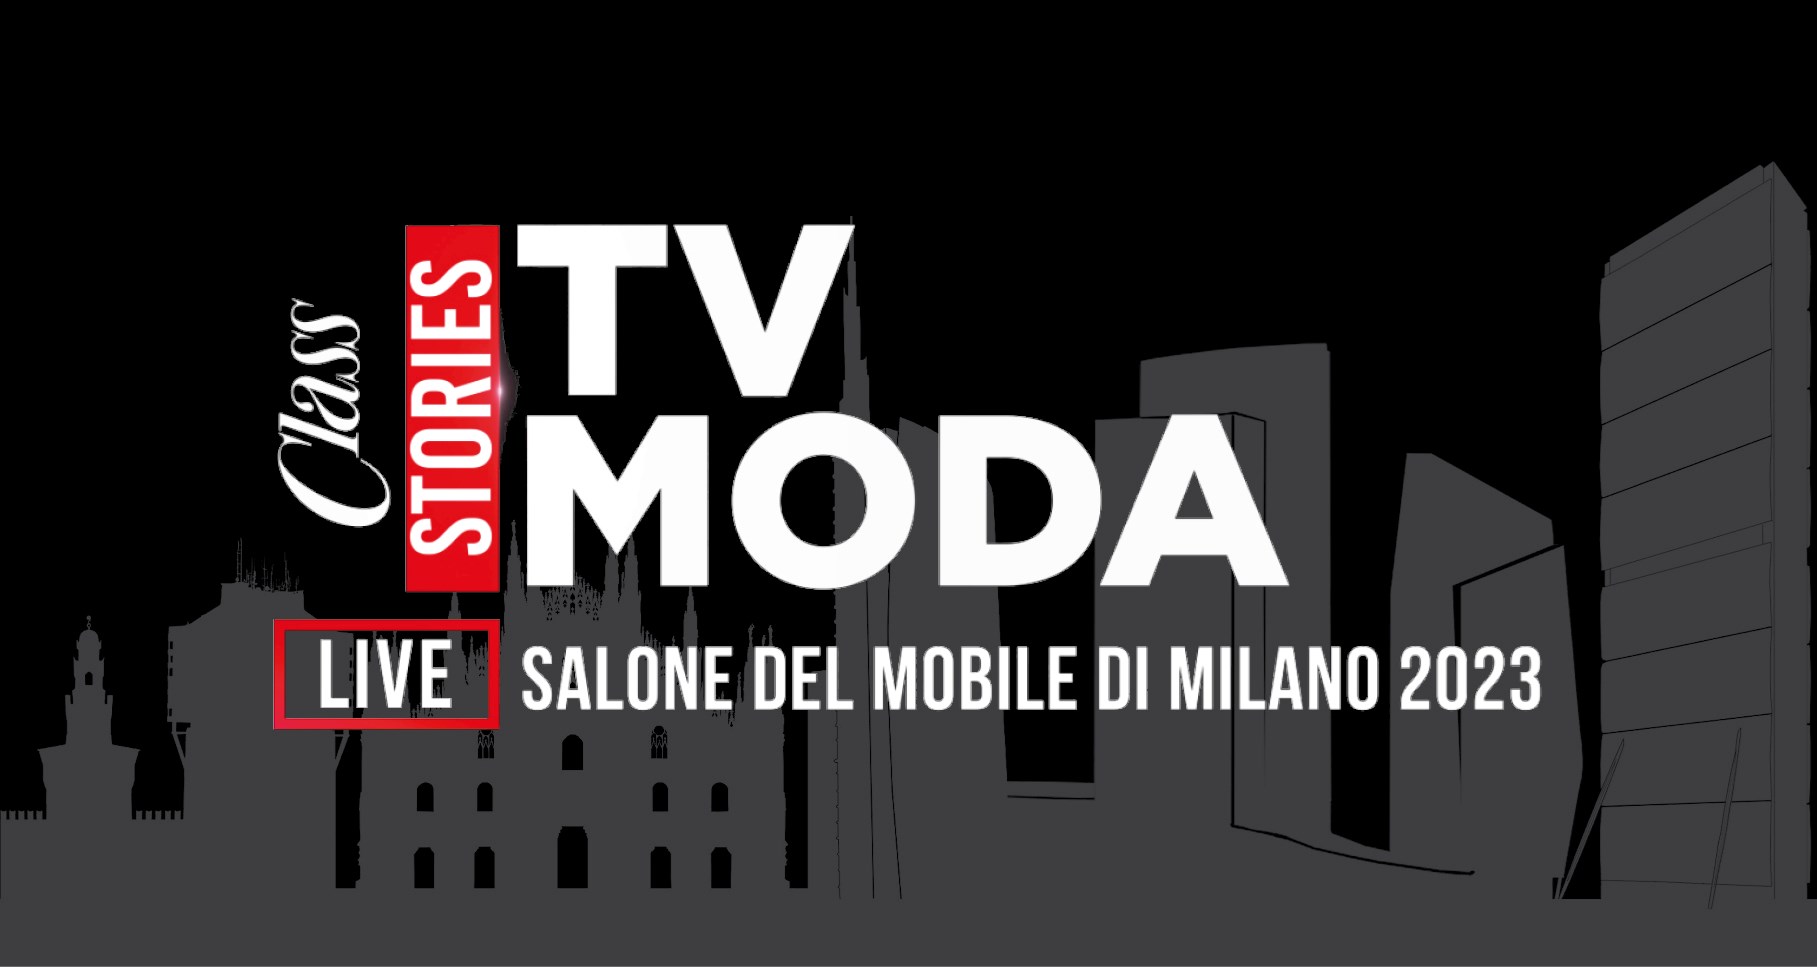 Class Tv Moda live from Salone del Mobile 2023